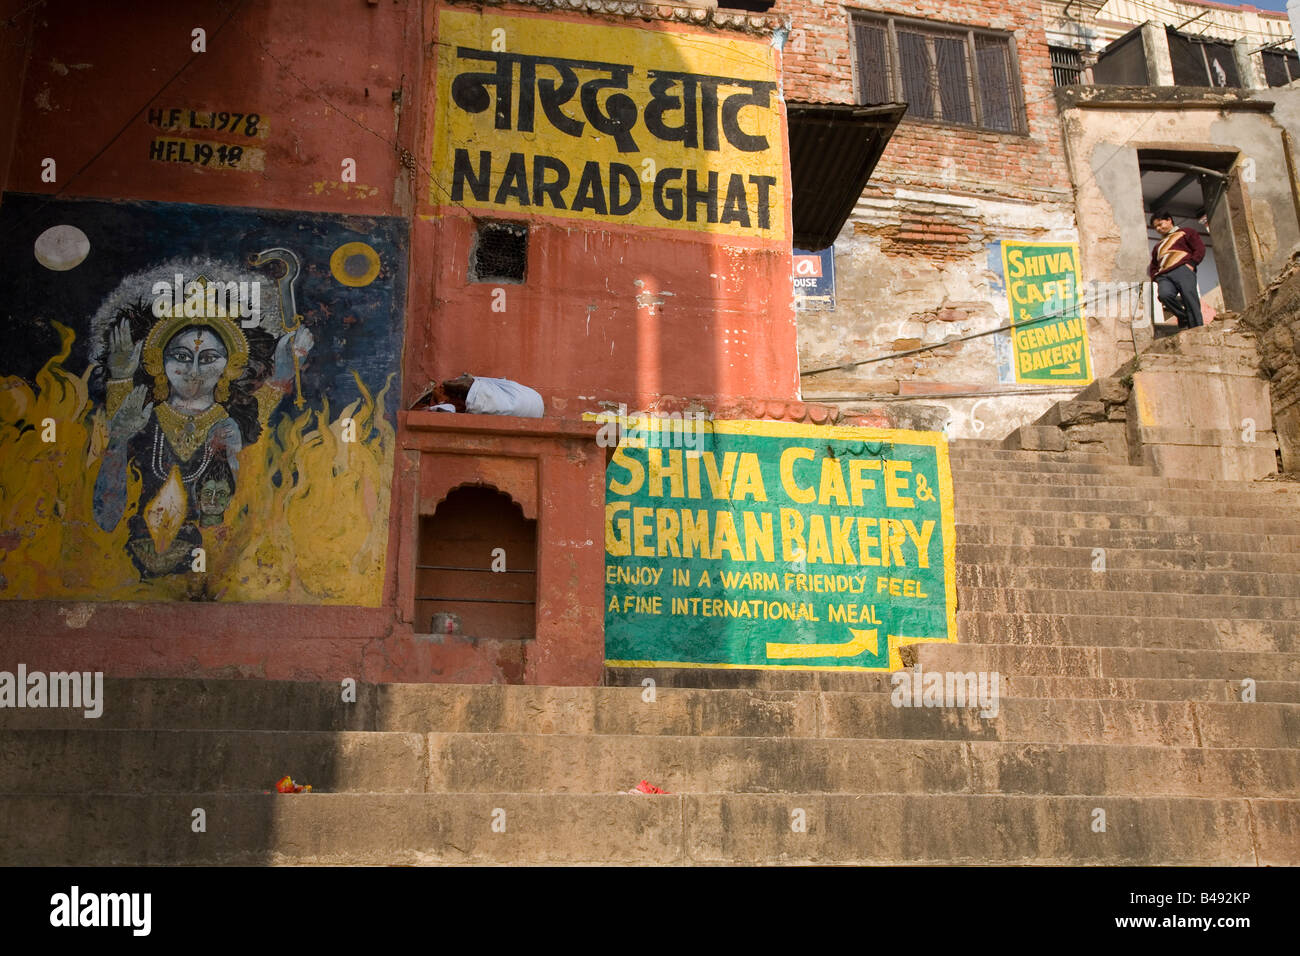 Étapes à l'Narad Ghat de la ville de Varanasi, en Inde. Annonces et d'un droit religieux peut être vu peint sur les murs. Banque D'Images